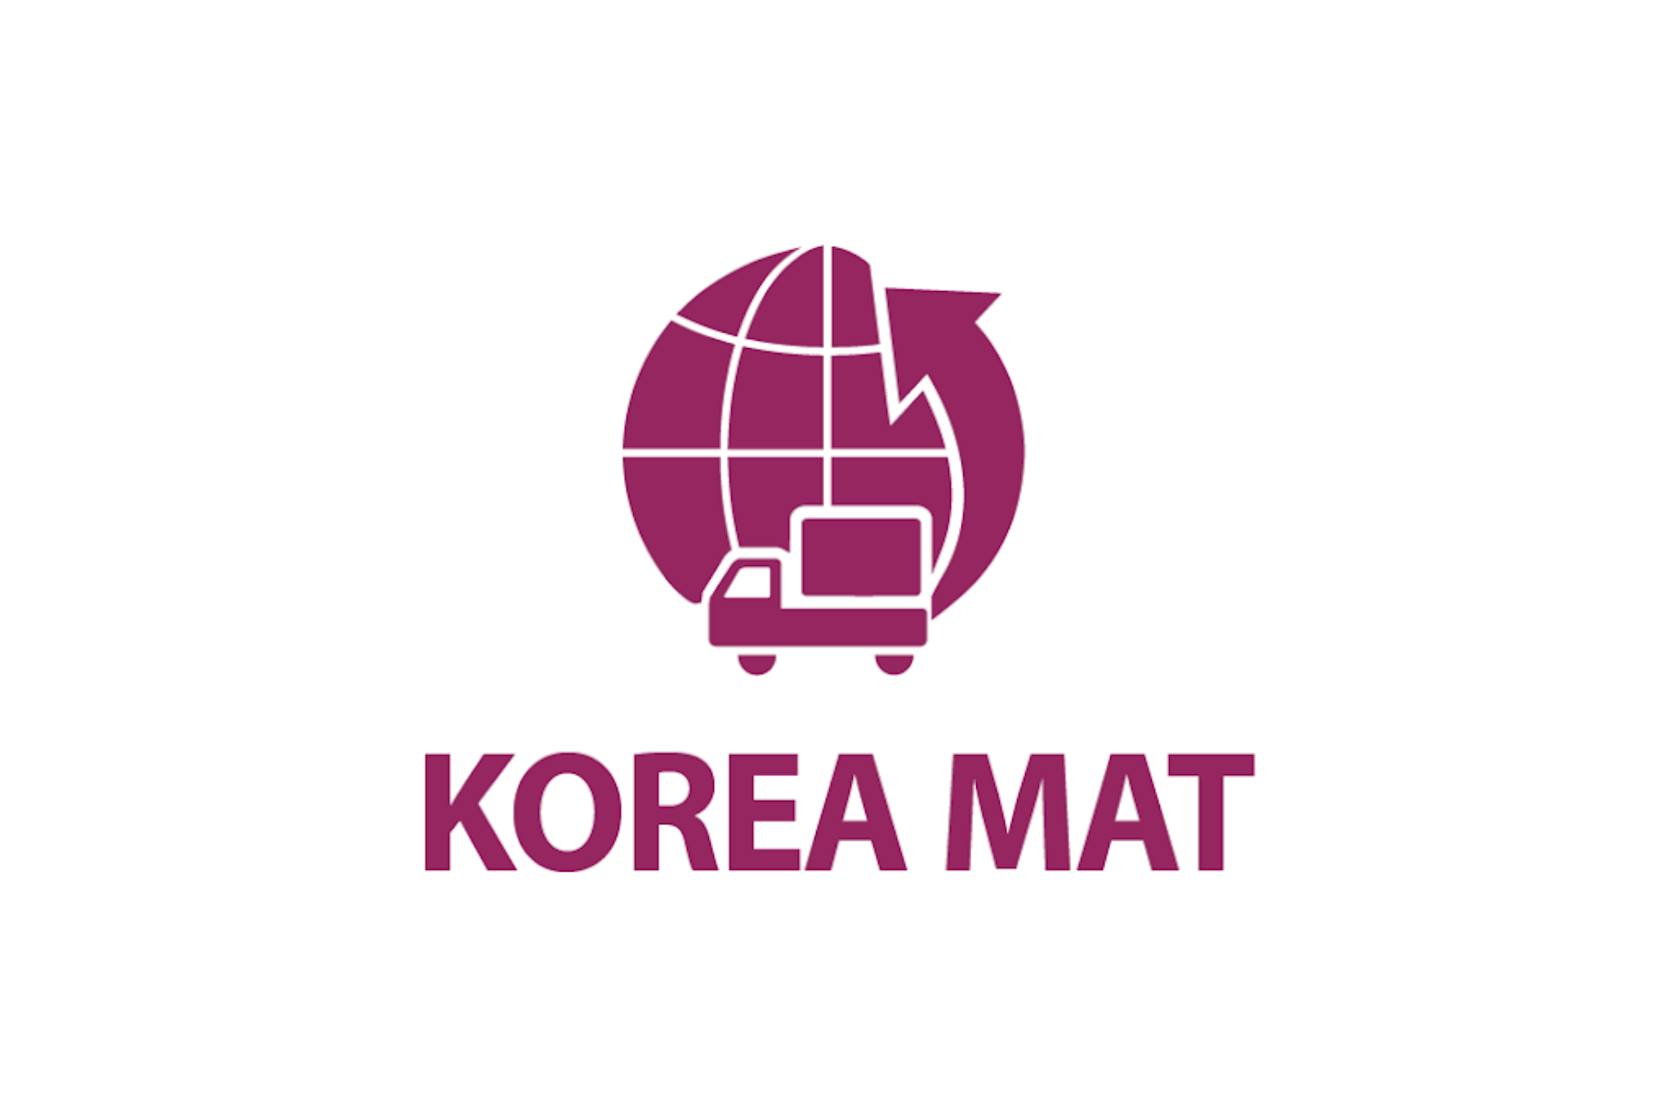 Koreamat - معرض كوريا الدولي لمناولة المواد واللوجستيات